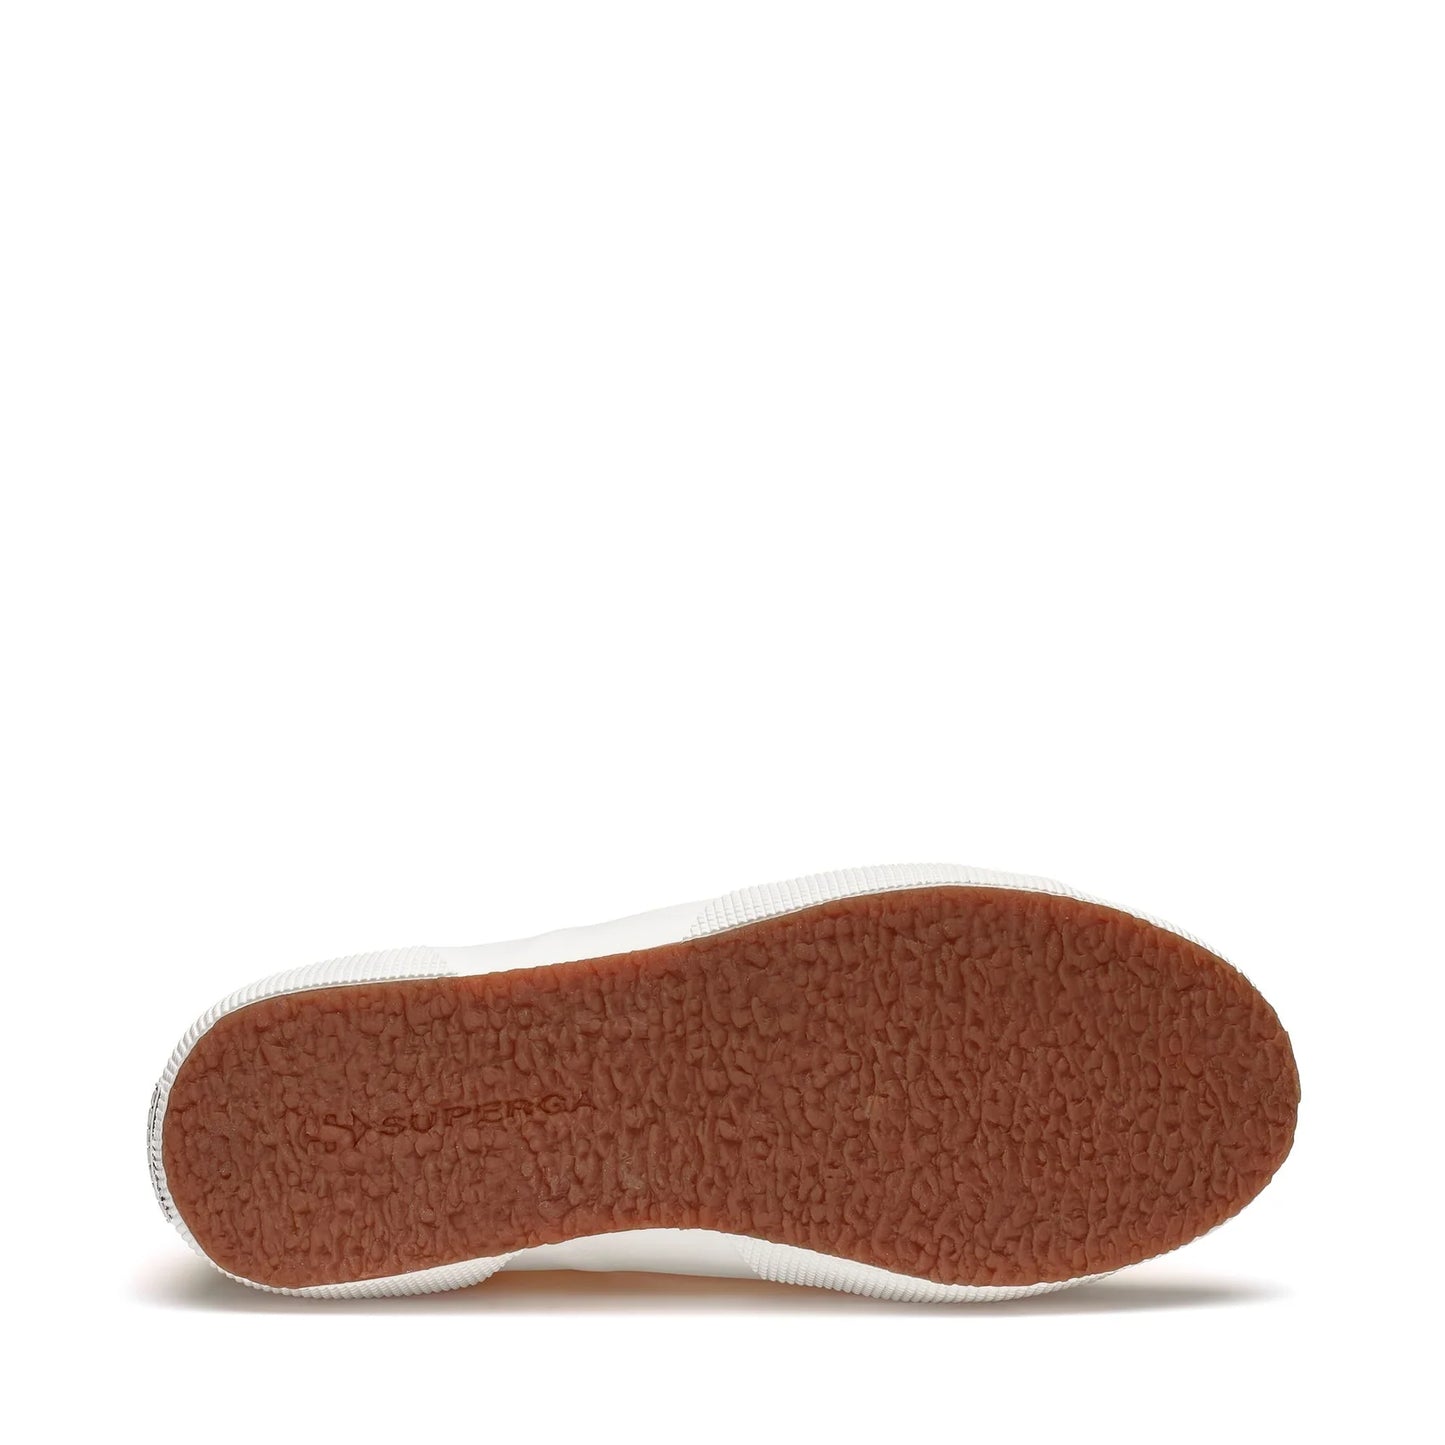 SUPERGA | 男女通用运动鞋 | 2750 COTU CLASSIC BEIGE GESSO | 浅褐色的